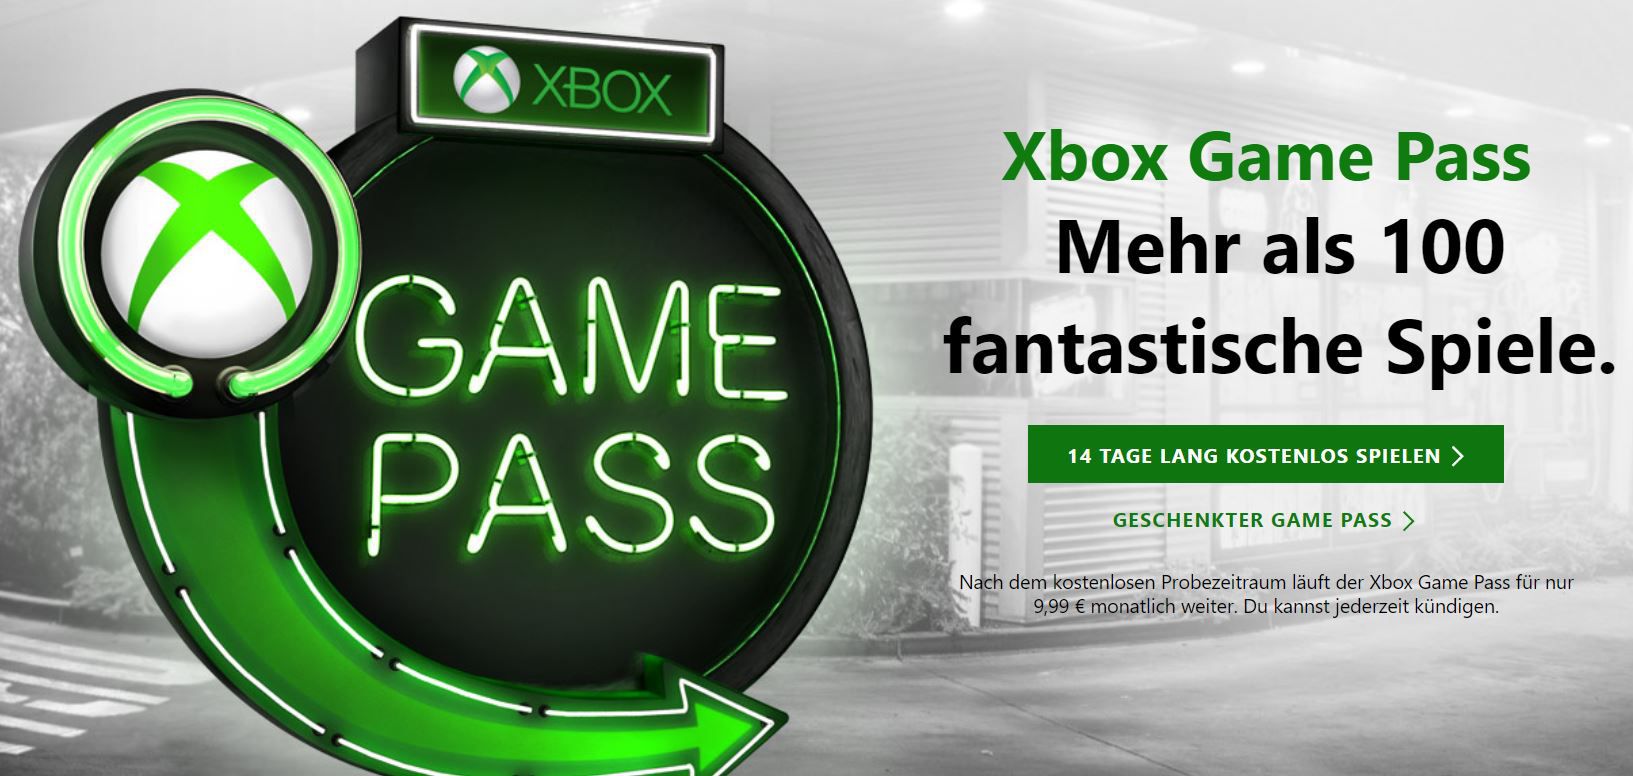 NEWS: Xbox Game Pass wird noch attraktiver